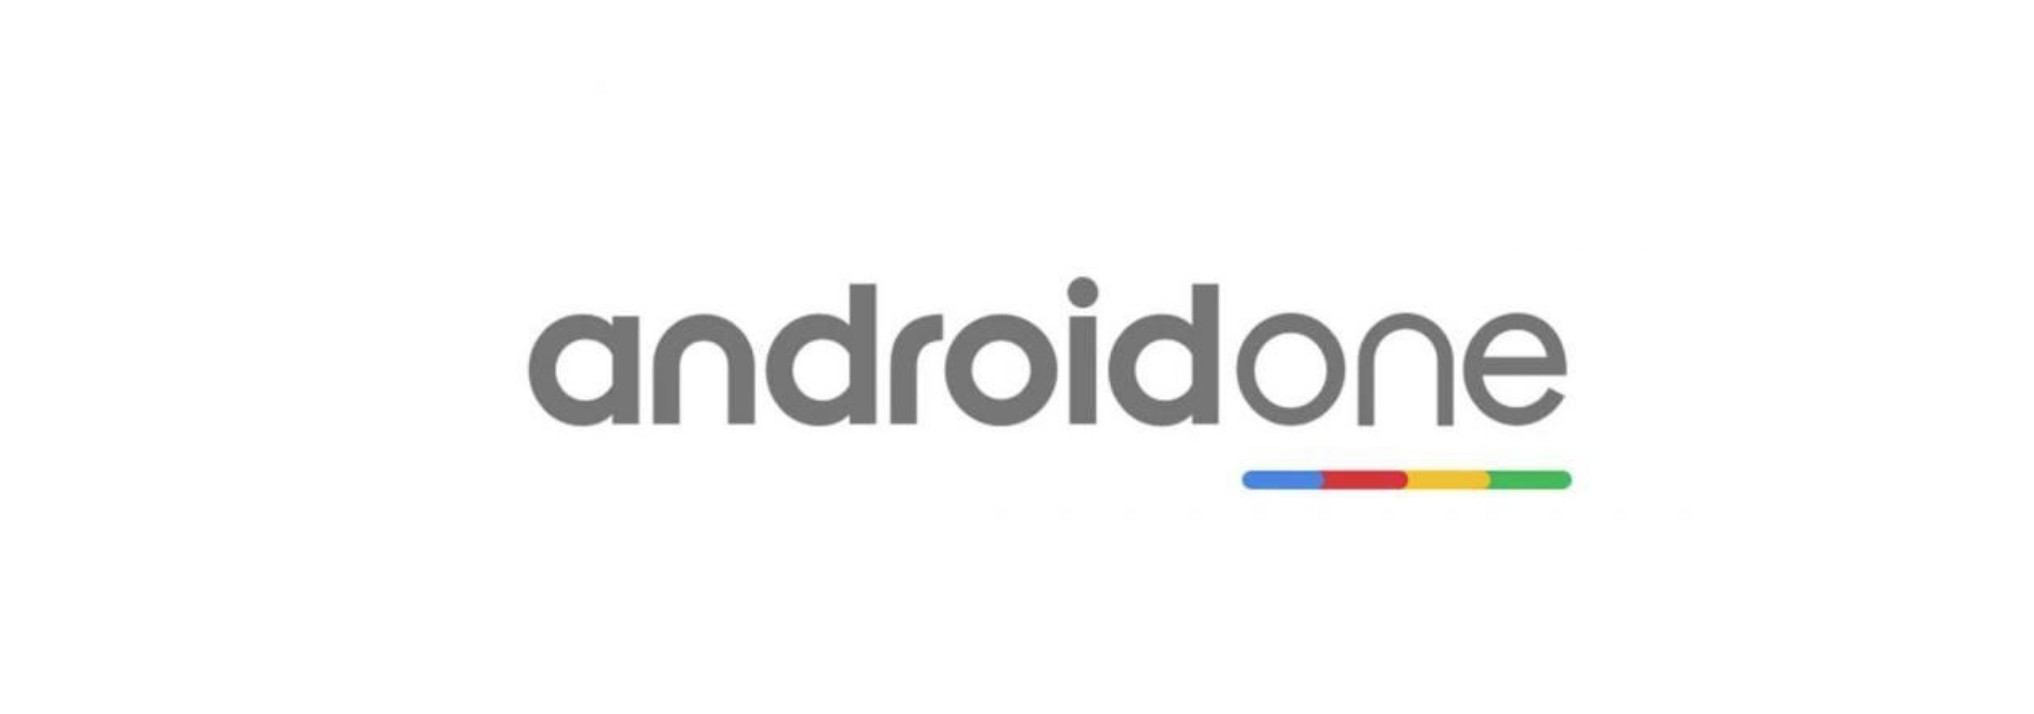 Android One logo antigo